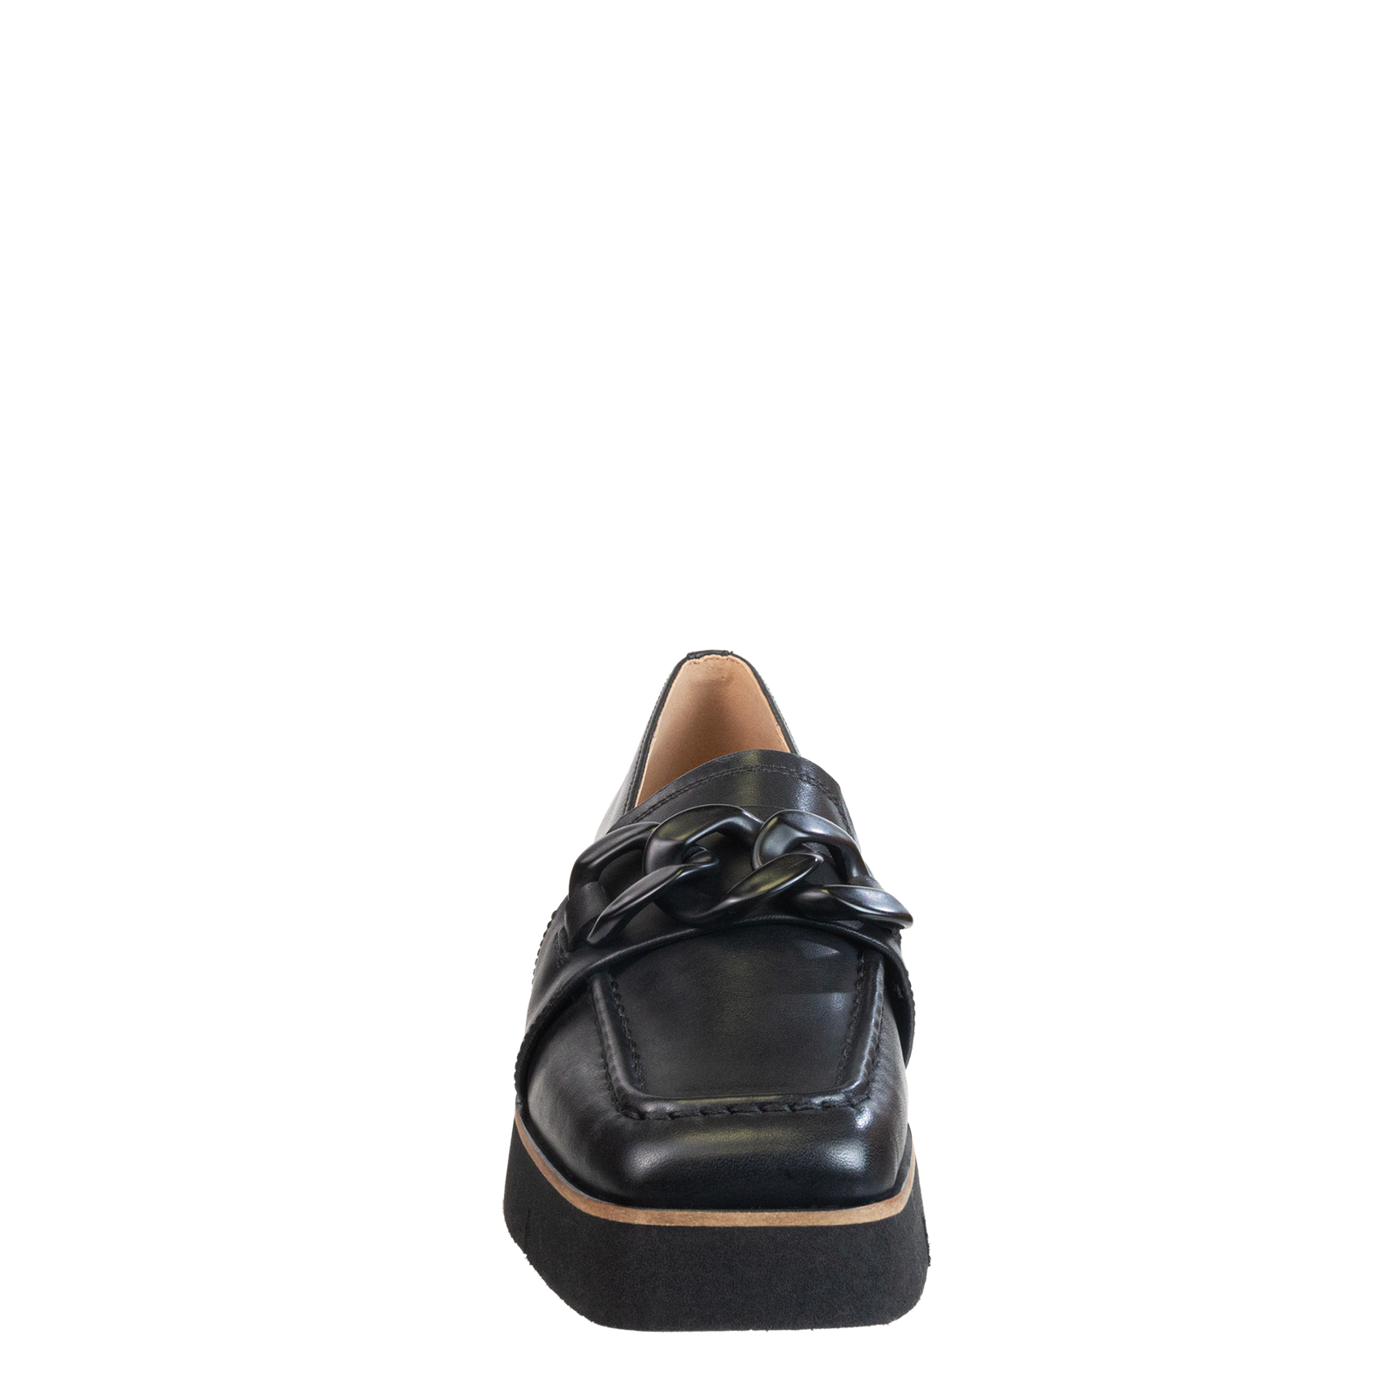 NAKED FEET - PRIVY in BLACK Platform Loafers